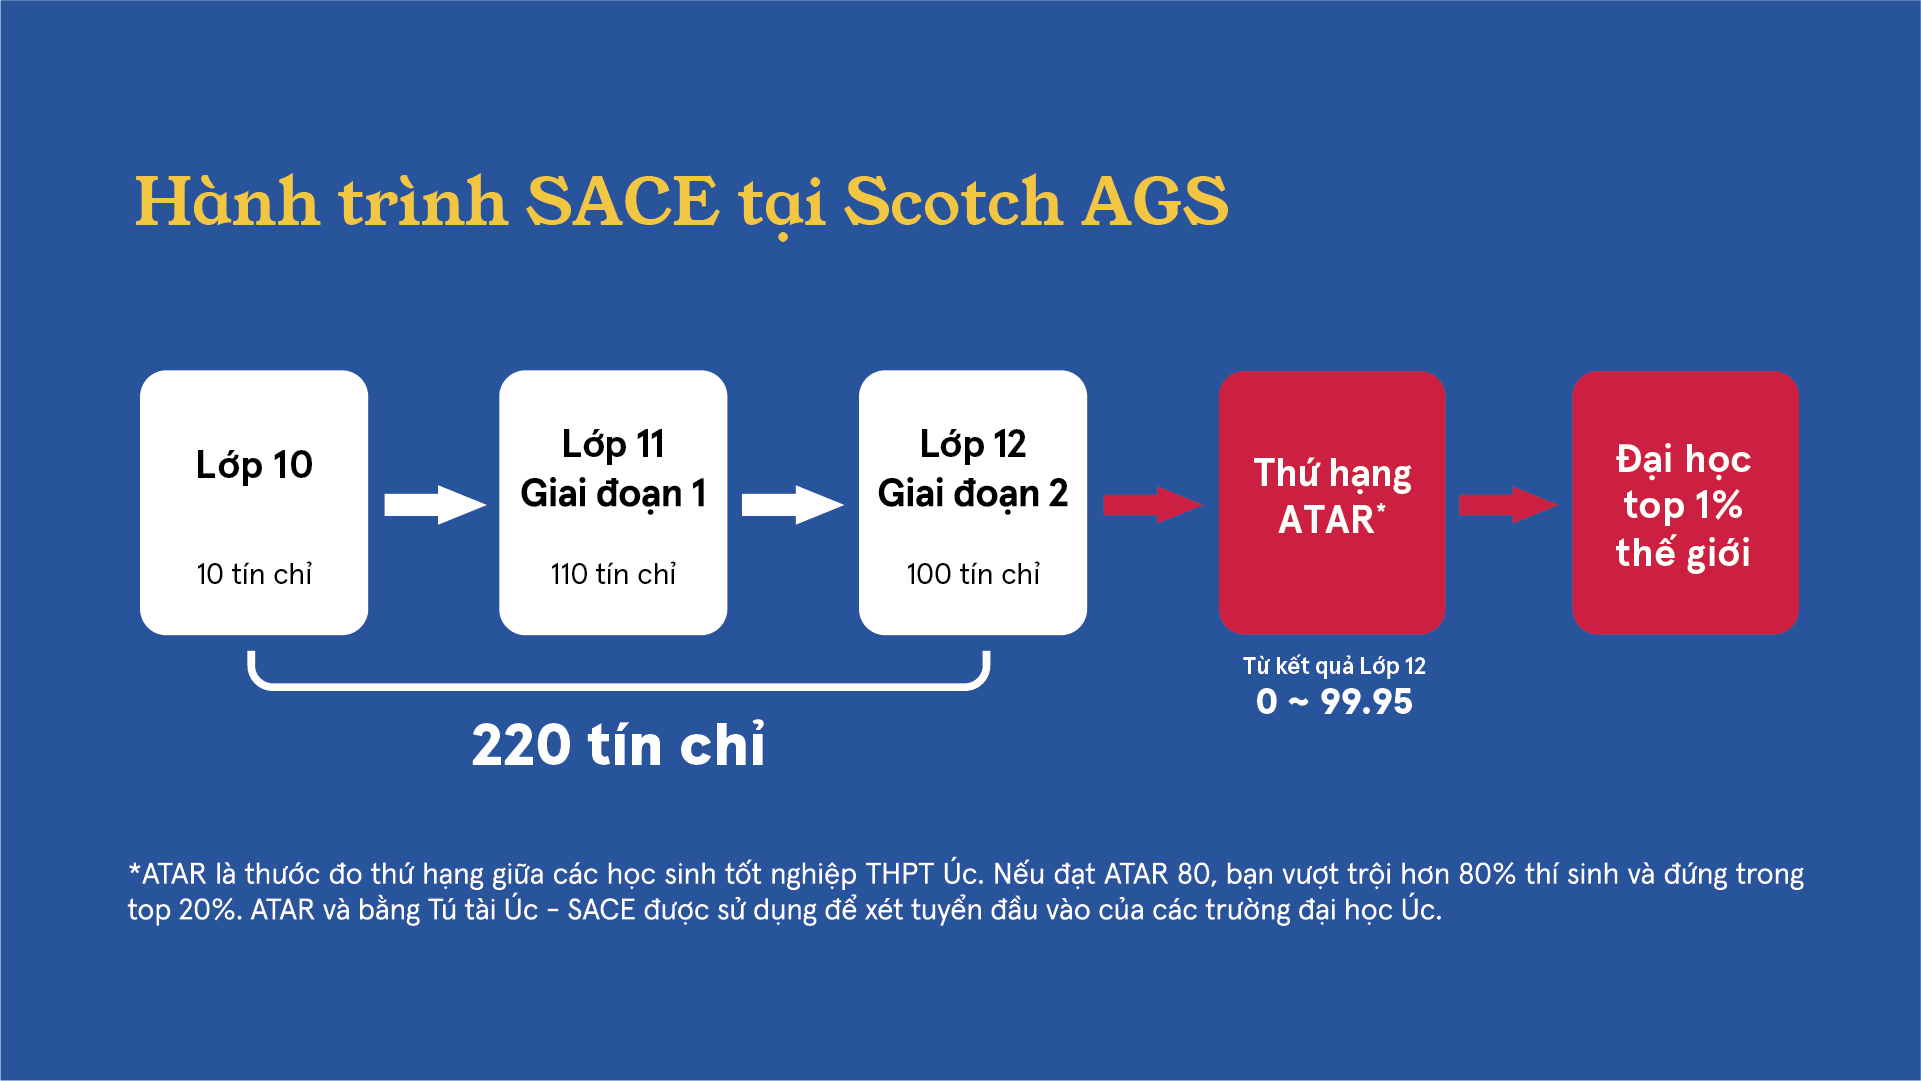 Hành trình học Tú tài SACE tại Scotch AGS